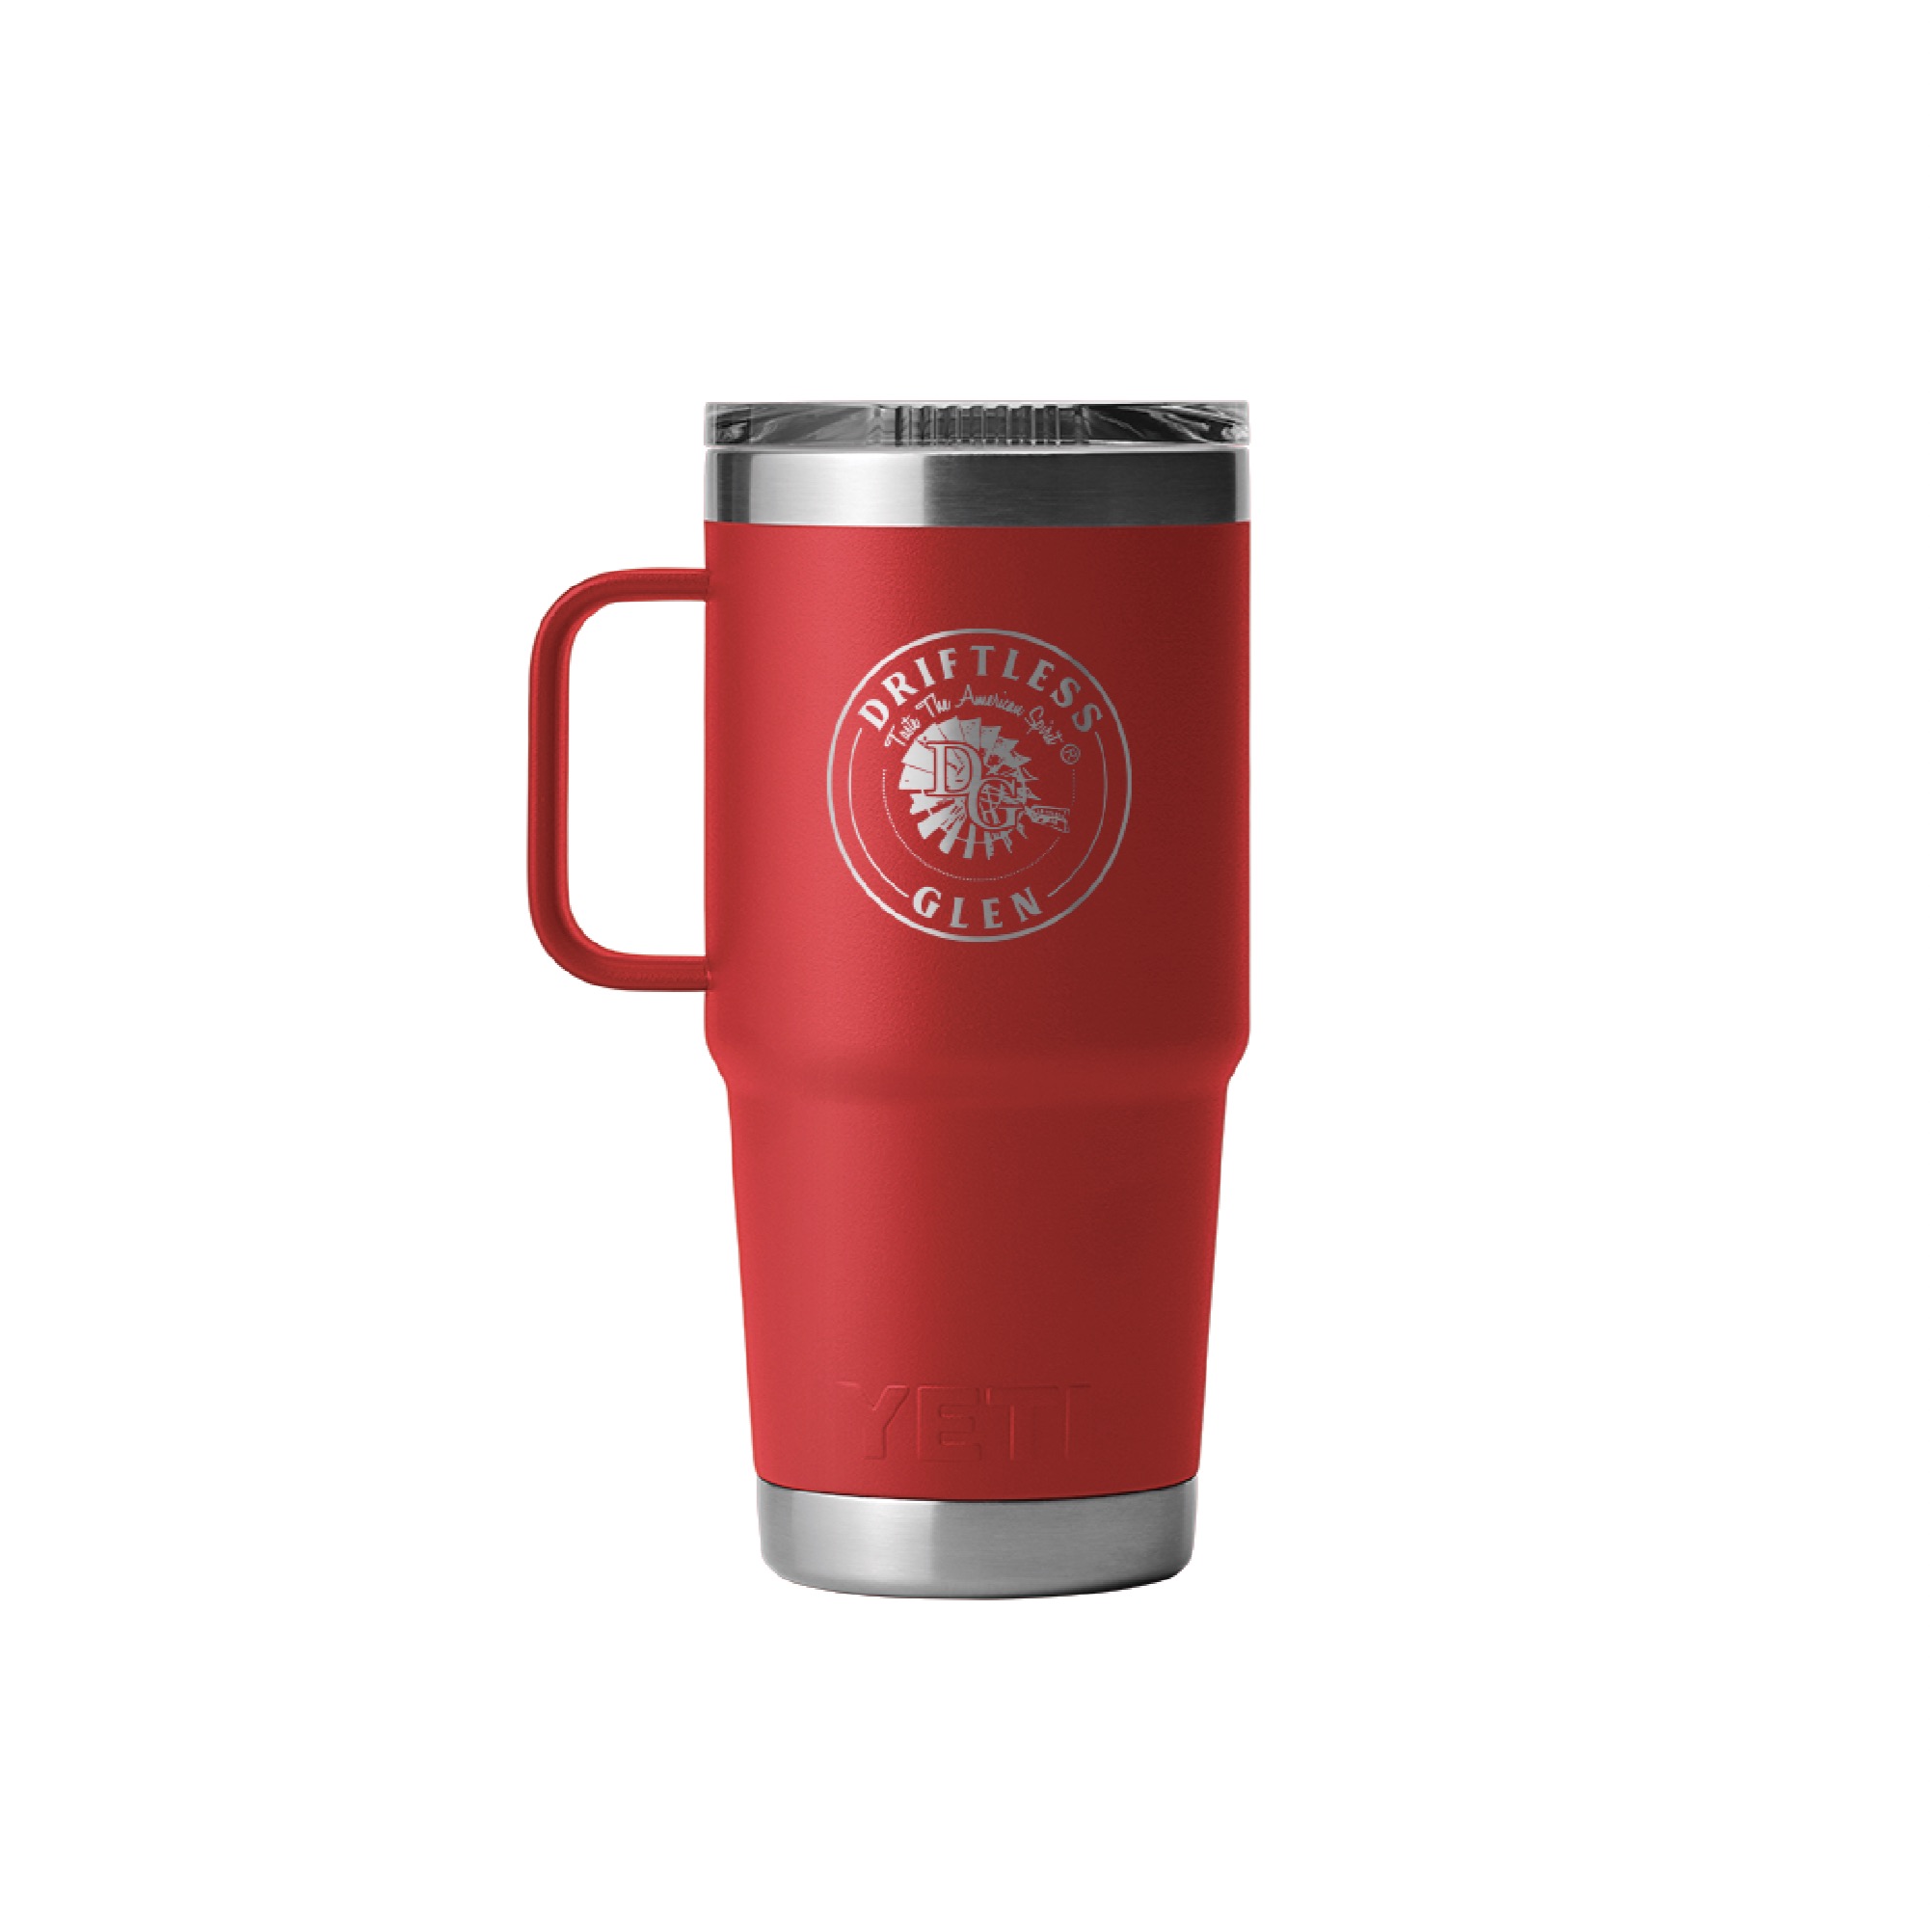 Yeti Red Coffee Mugs